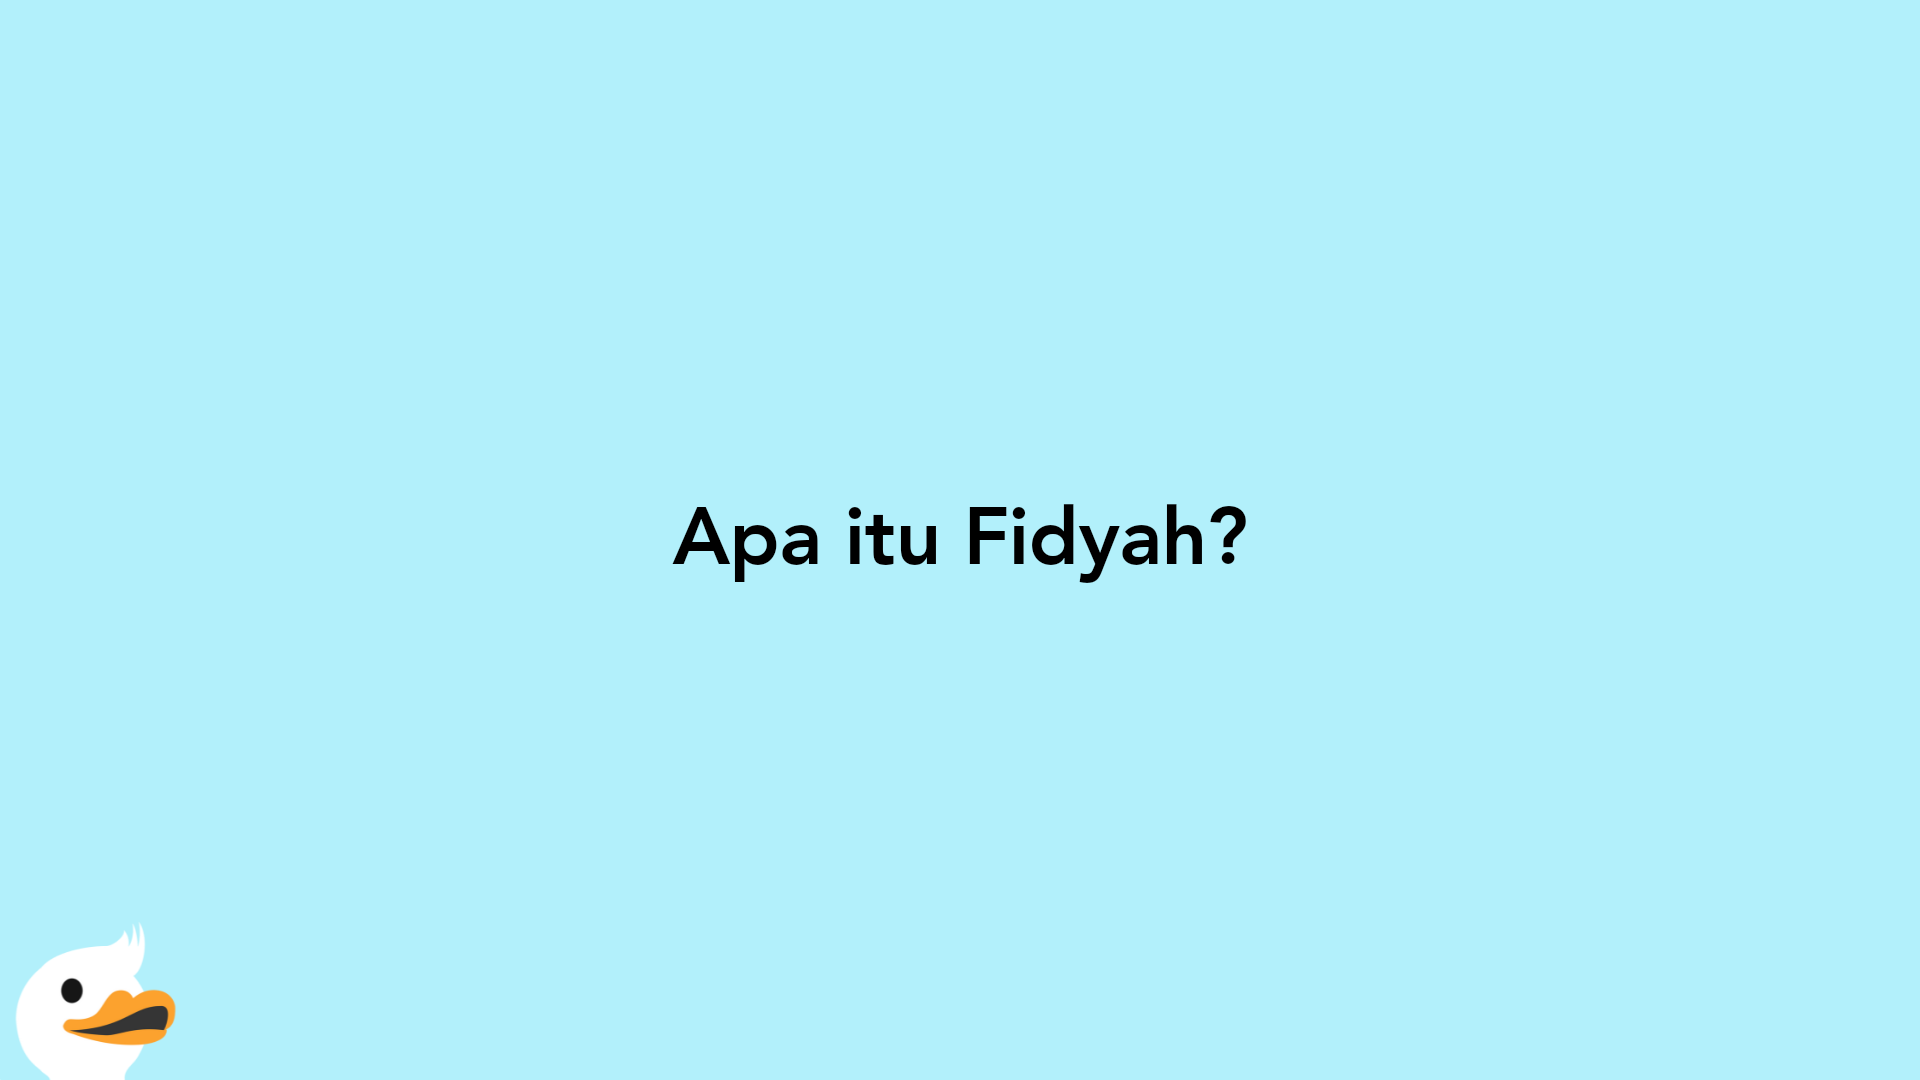 Apa itu Fidyah?